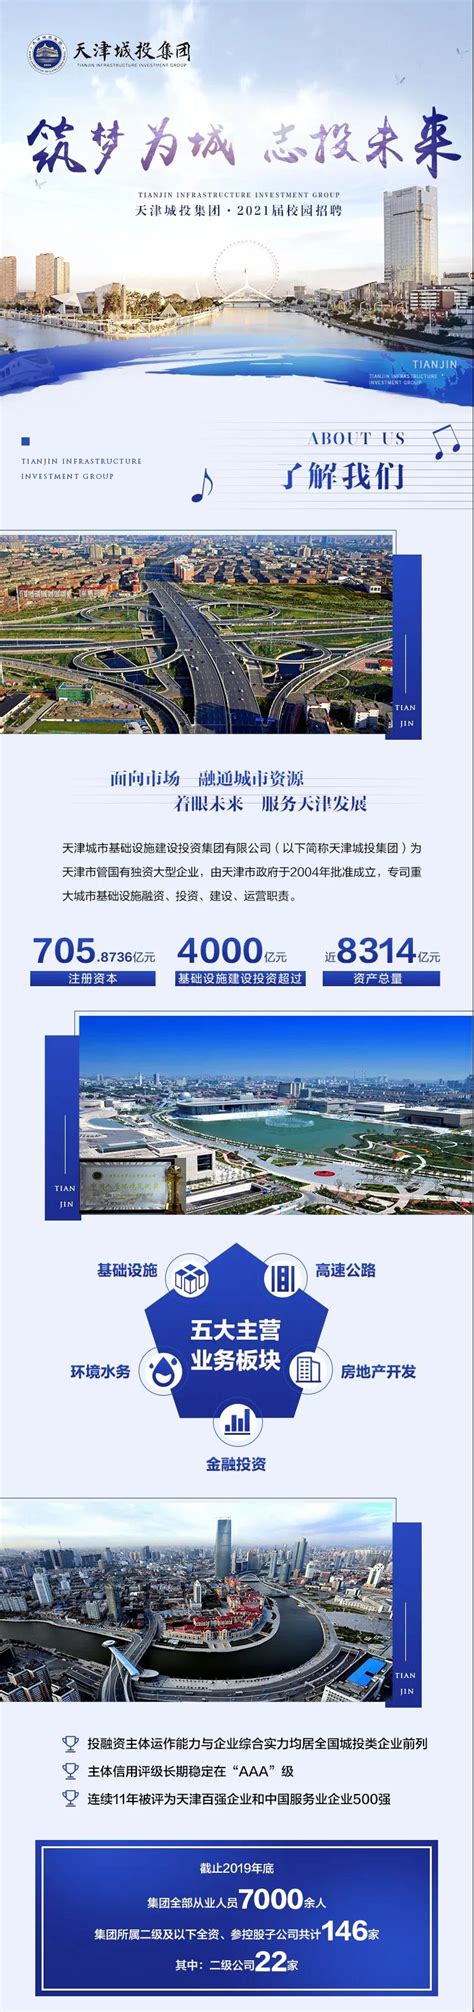 天津城市基础设施建设投资集团有限公司招聘